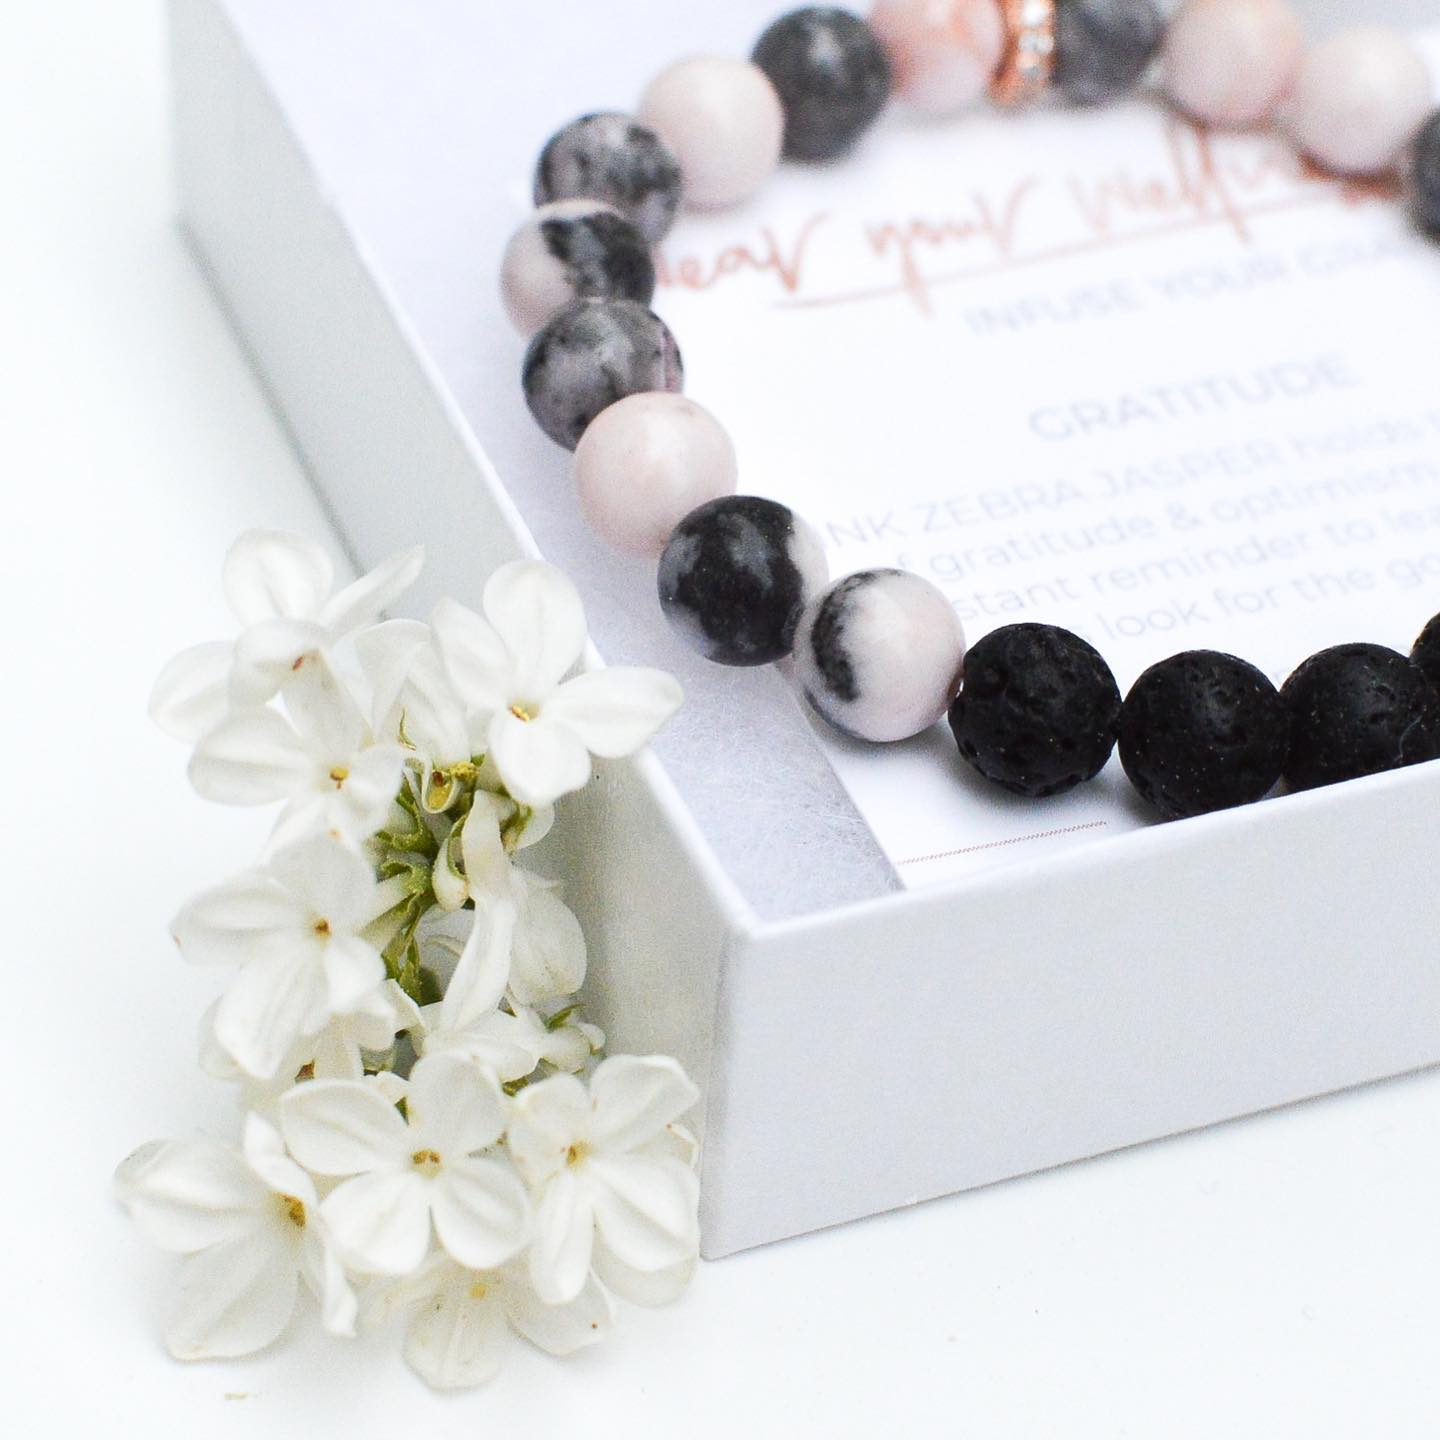 A stone bracelet is in a white box alongside white flowers.